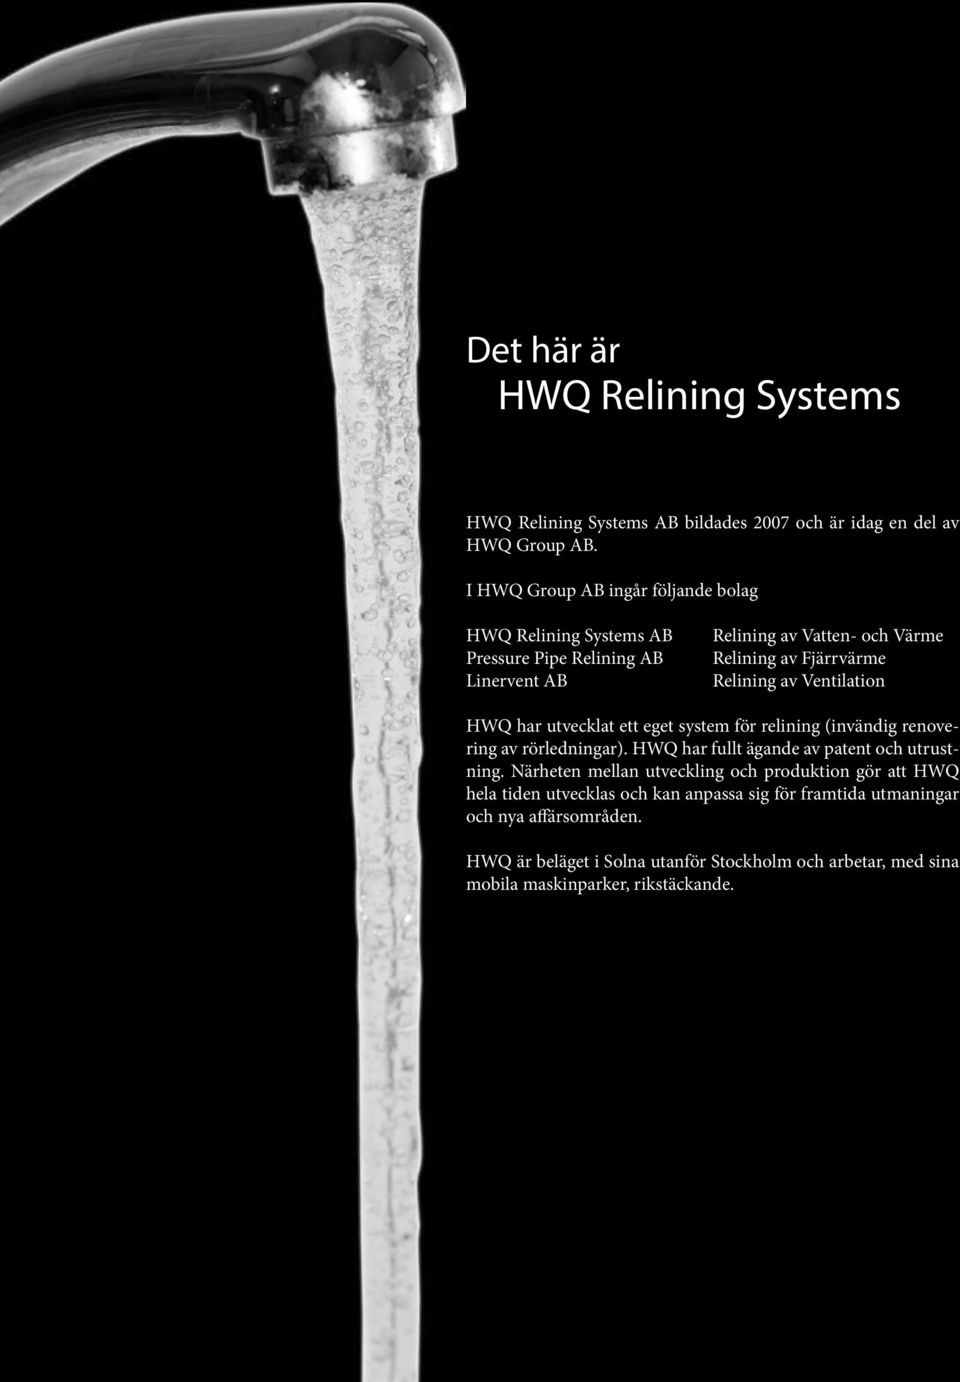 Ventilation HWQ har utvecklat ett eget system för relining (invändig renovering av rörledningar). HWQ har fullt ägande av patent och utrustning.